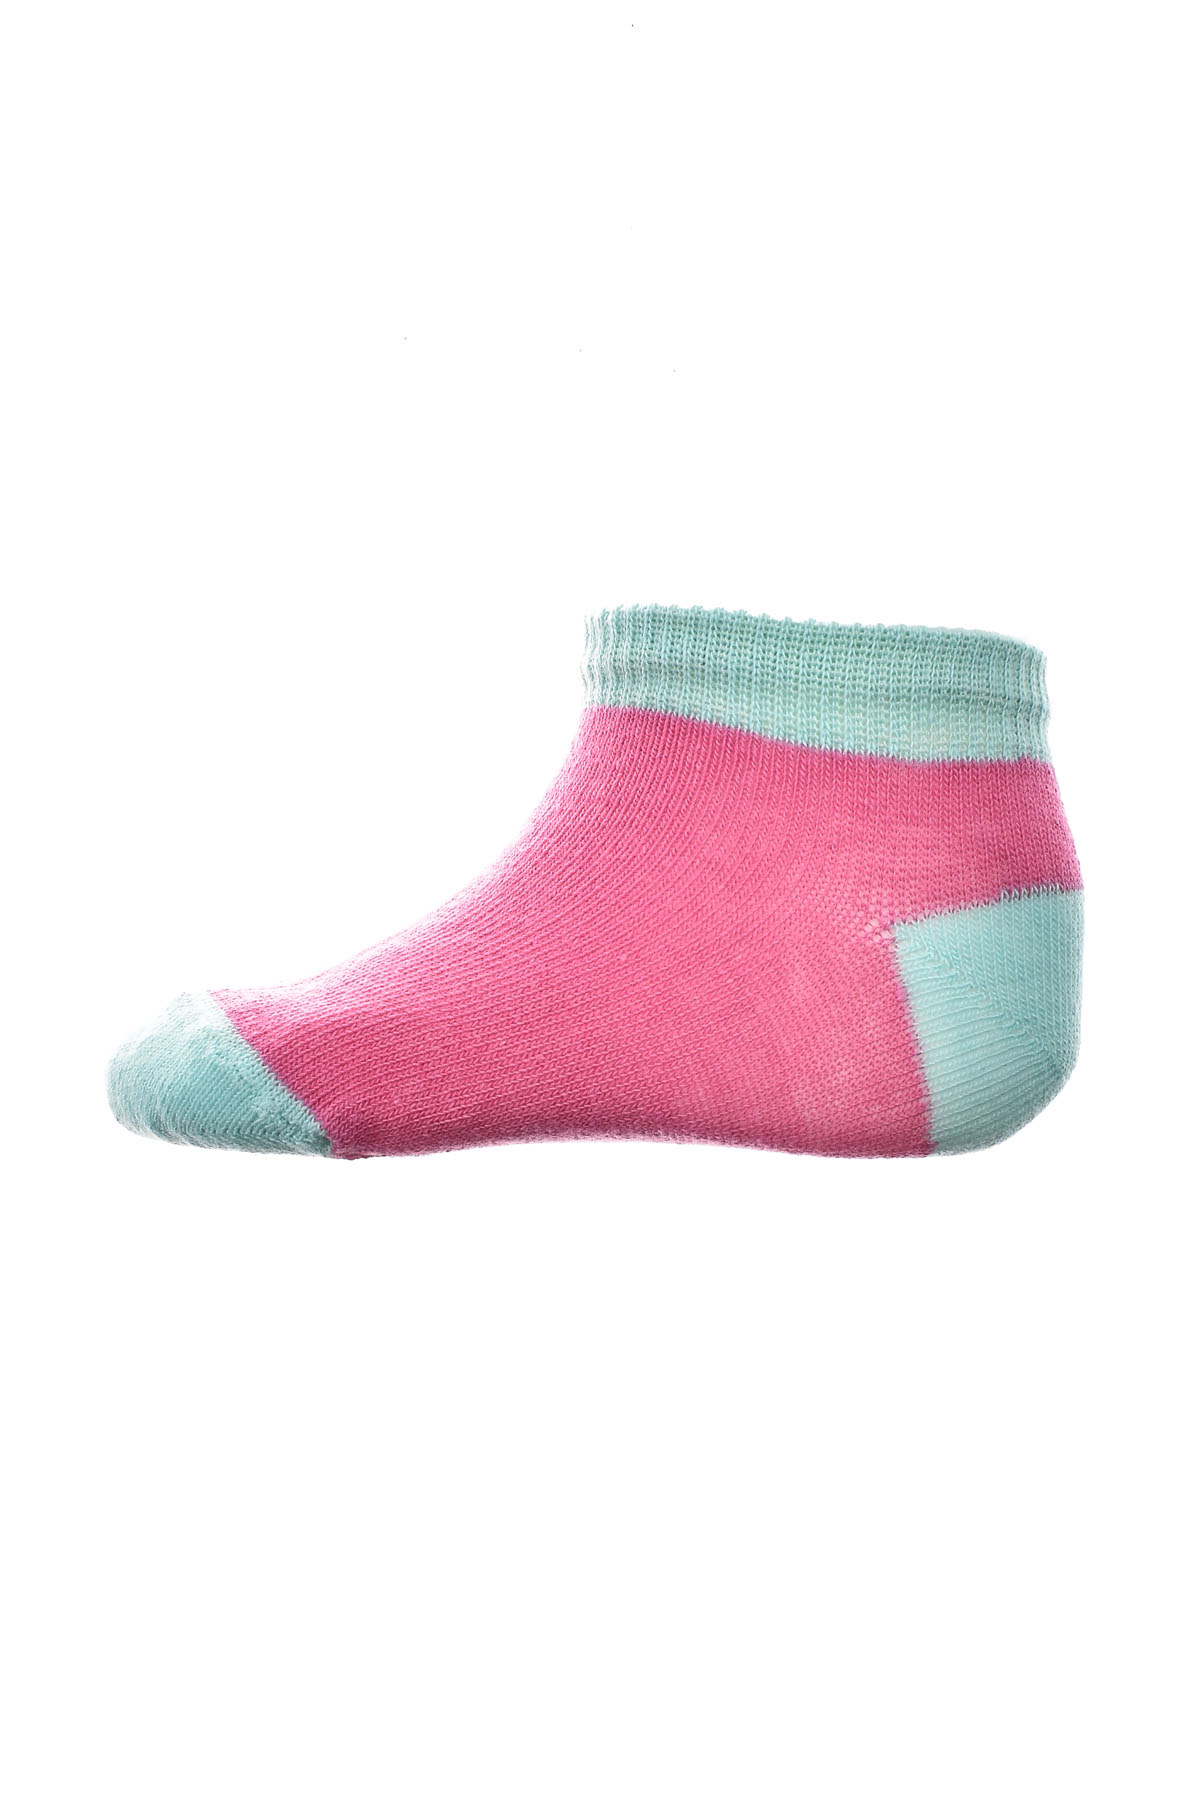 Kids' Socks - BebeLino - 0